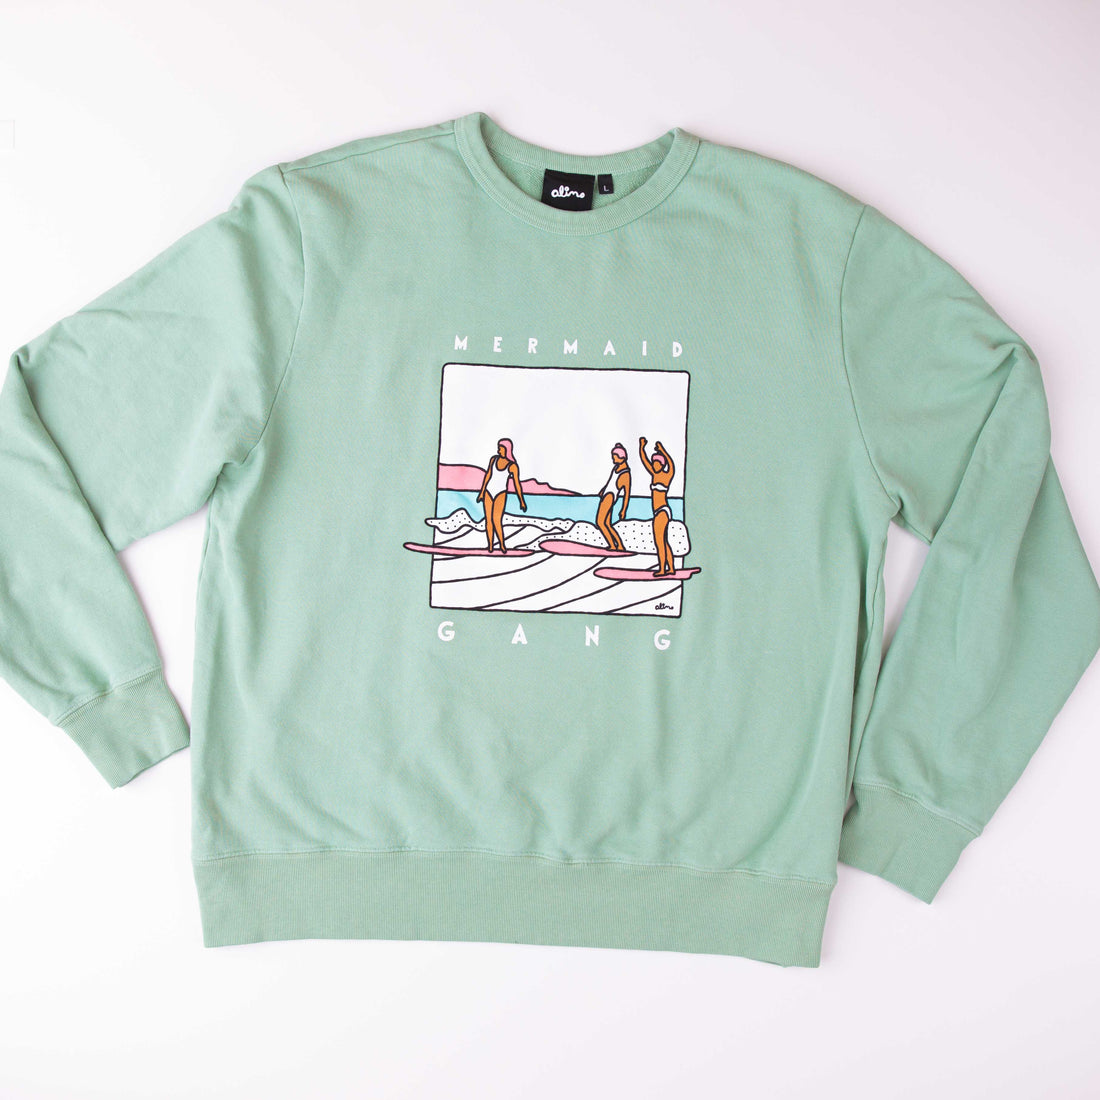 Mermaid Gang - Sweatshirt